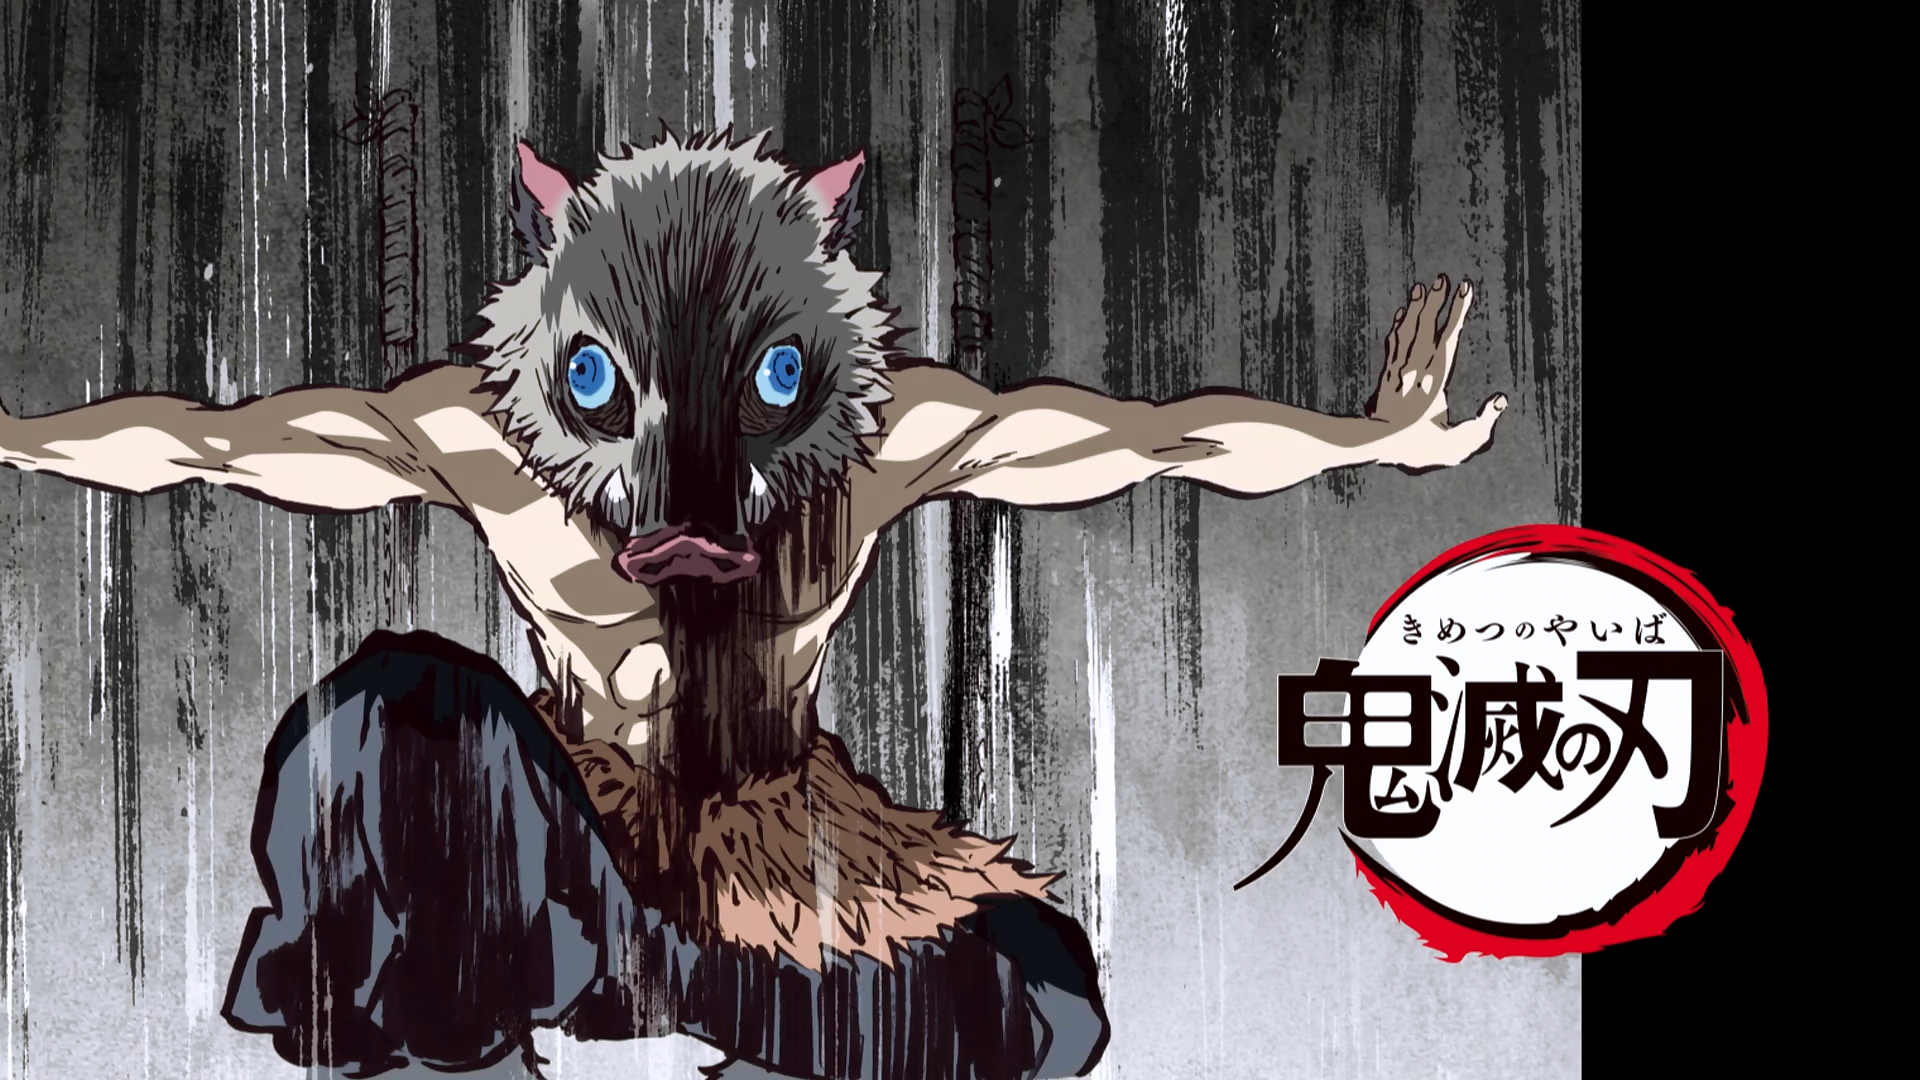 Ep 15: Demon Slayer: Kimetsu no Yaiba, Chapter 1 Cruelty